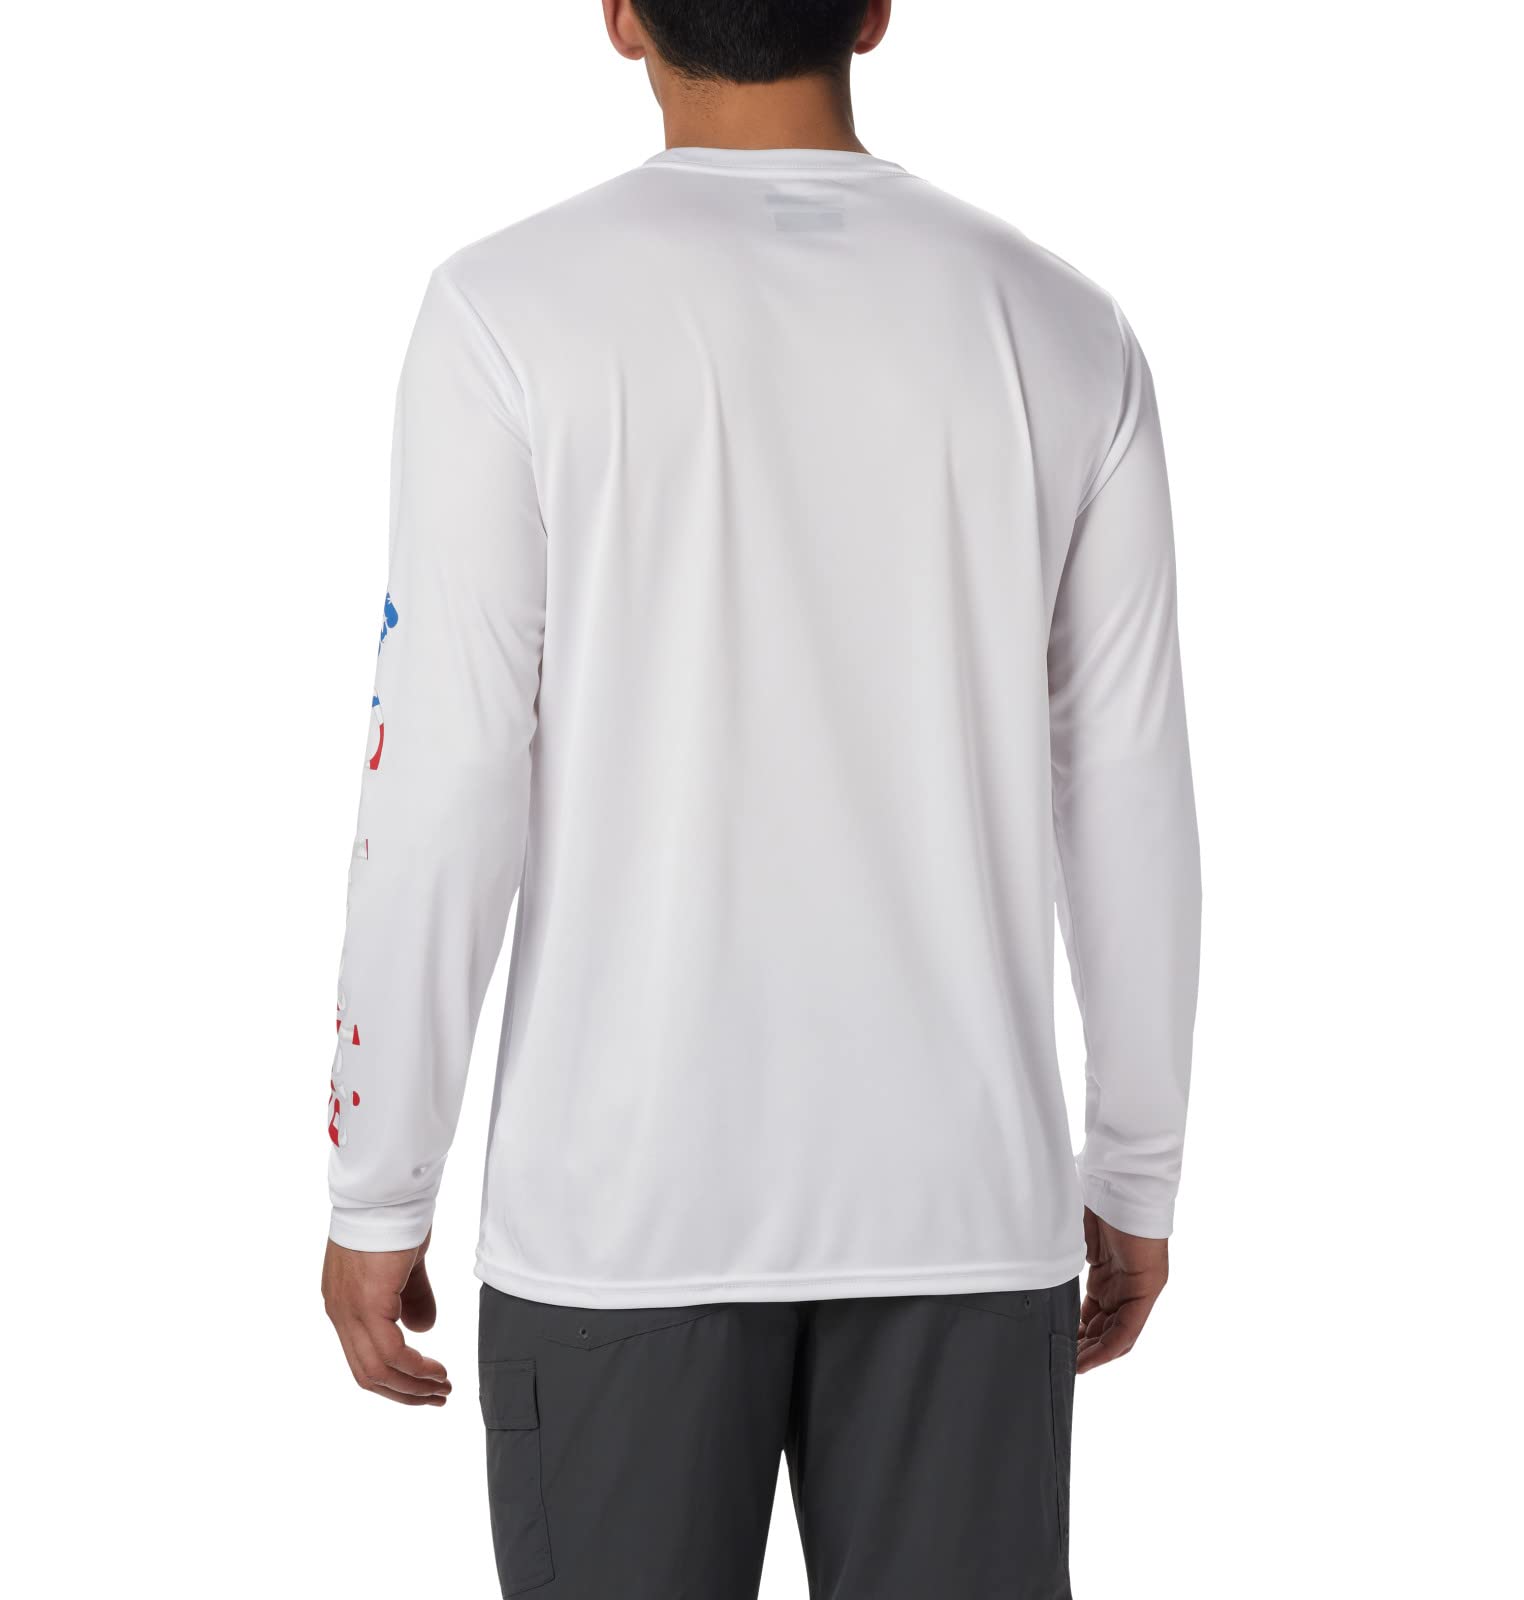 Columbia Men's Terminal Tackle PFG Long Sleeve Shirt